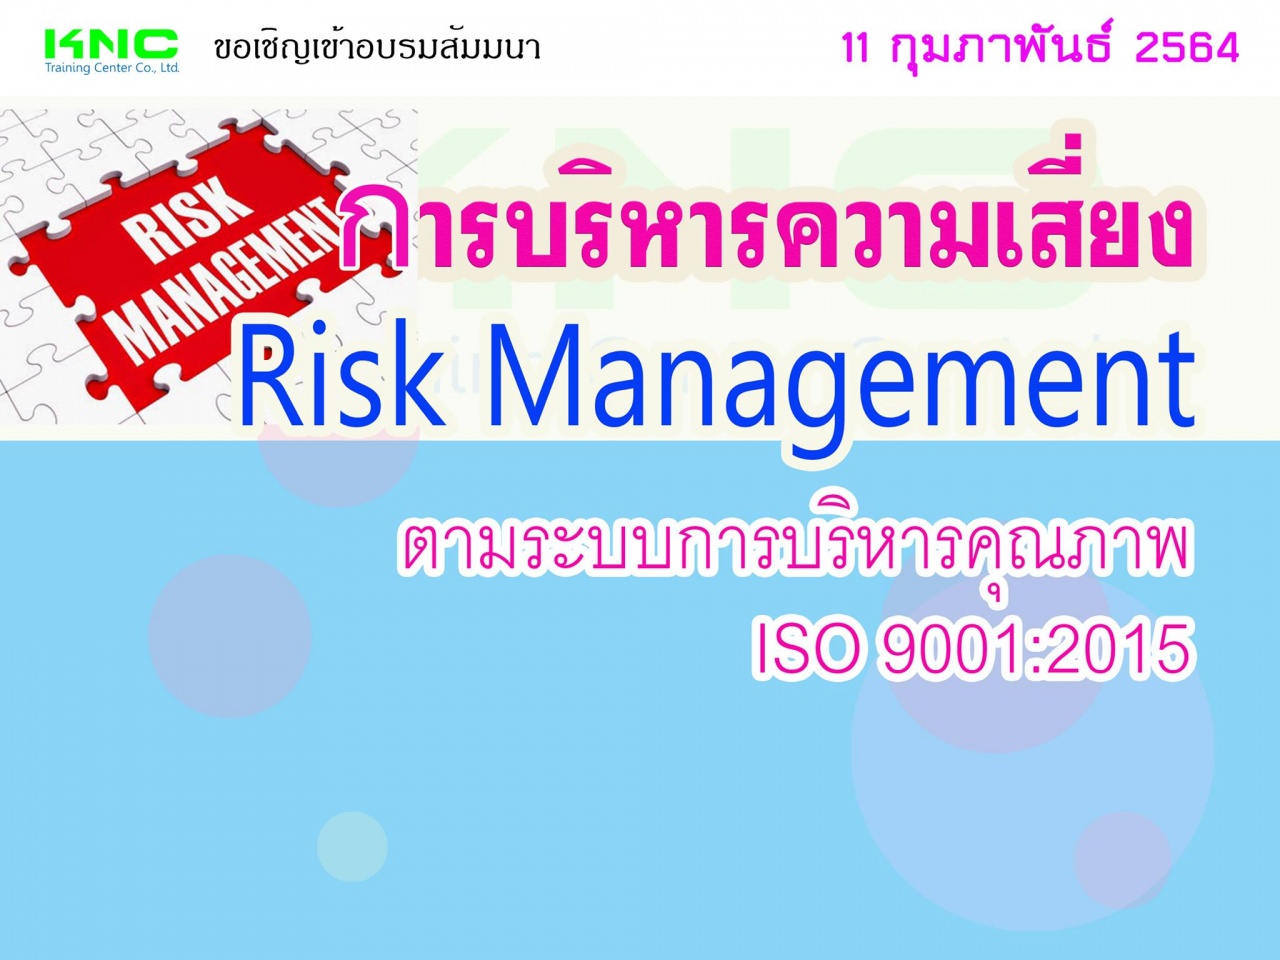 การบริหารความเสี่ยง Risk Management ตามระบบการบริหารคุณภาพ ISO 9001:2015